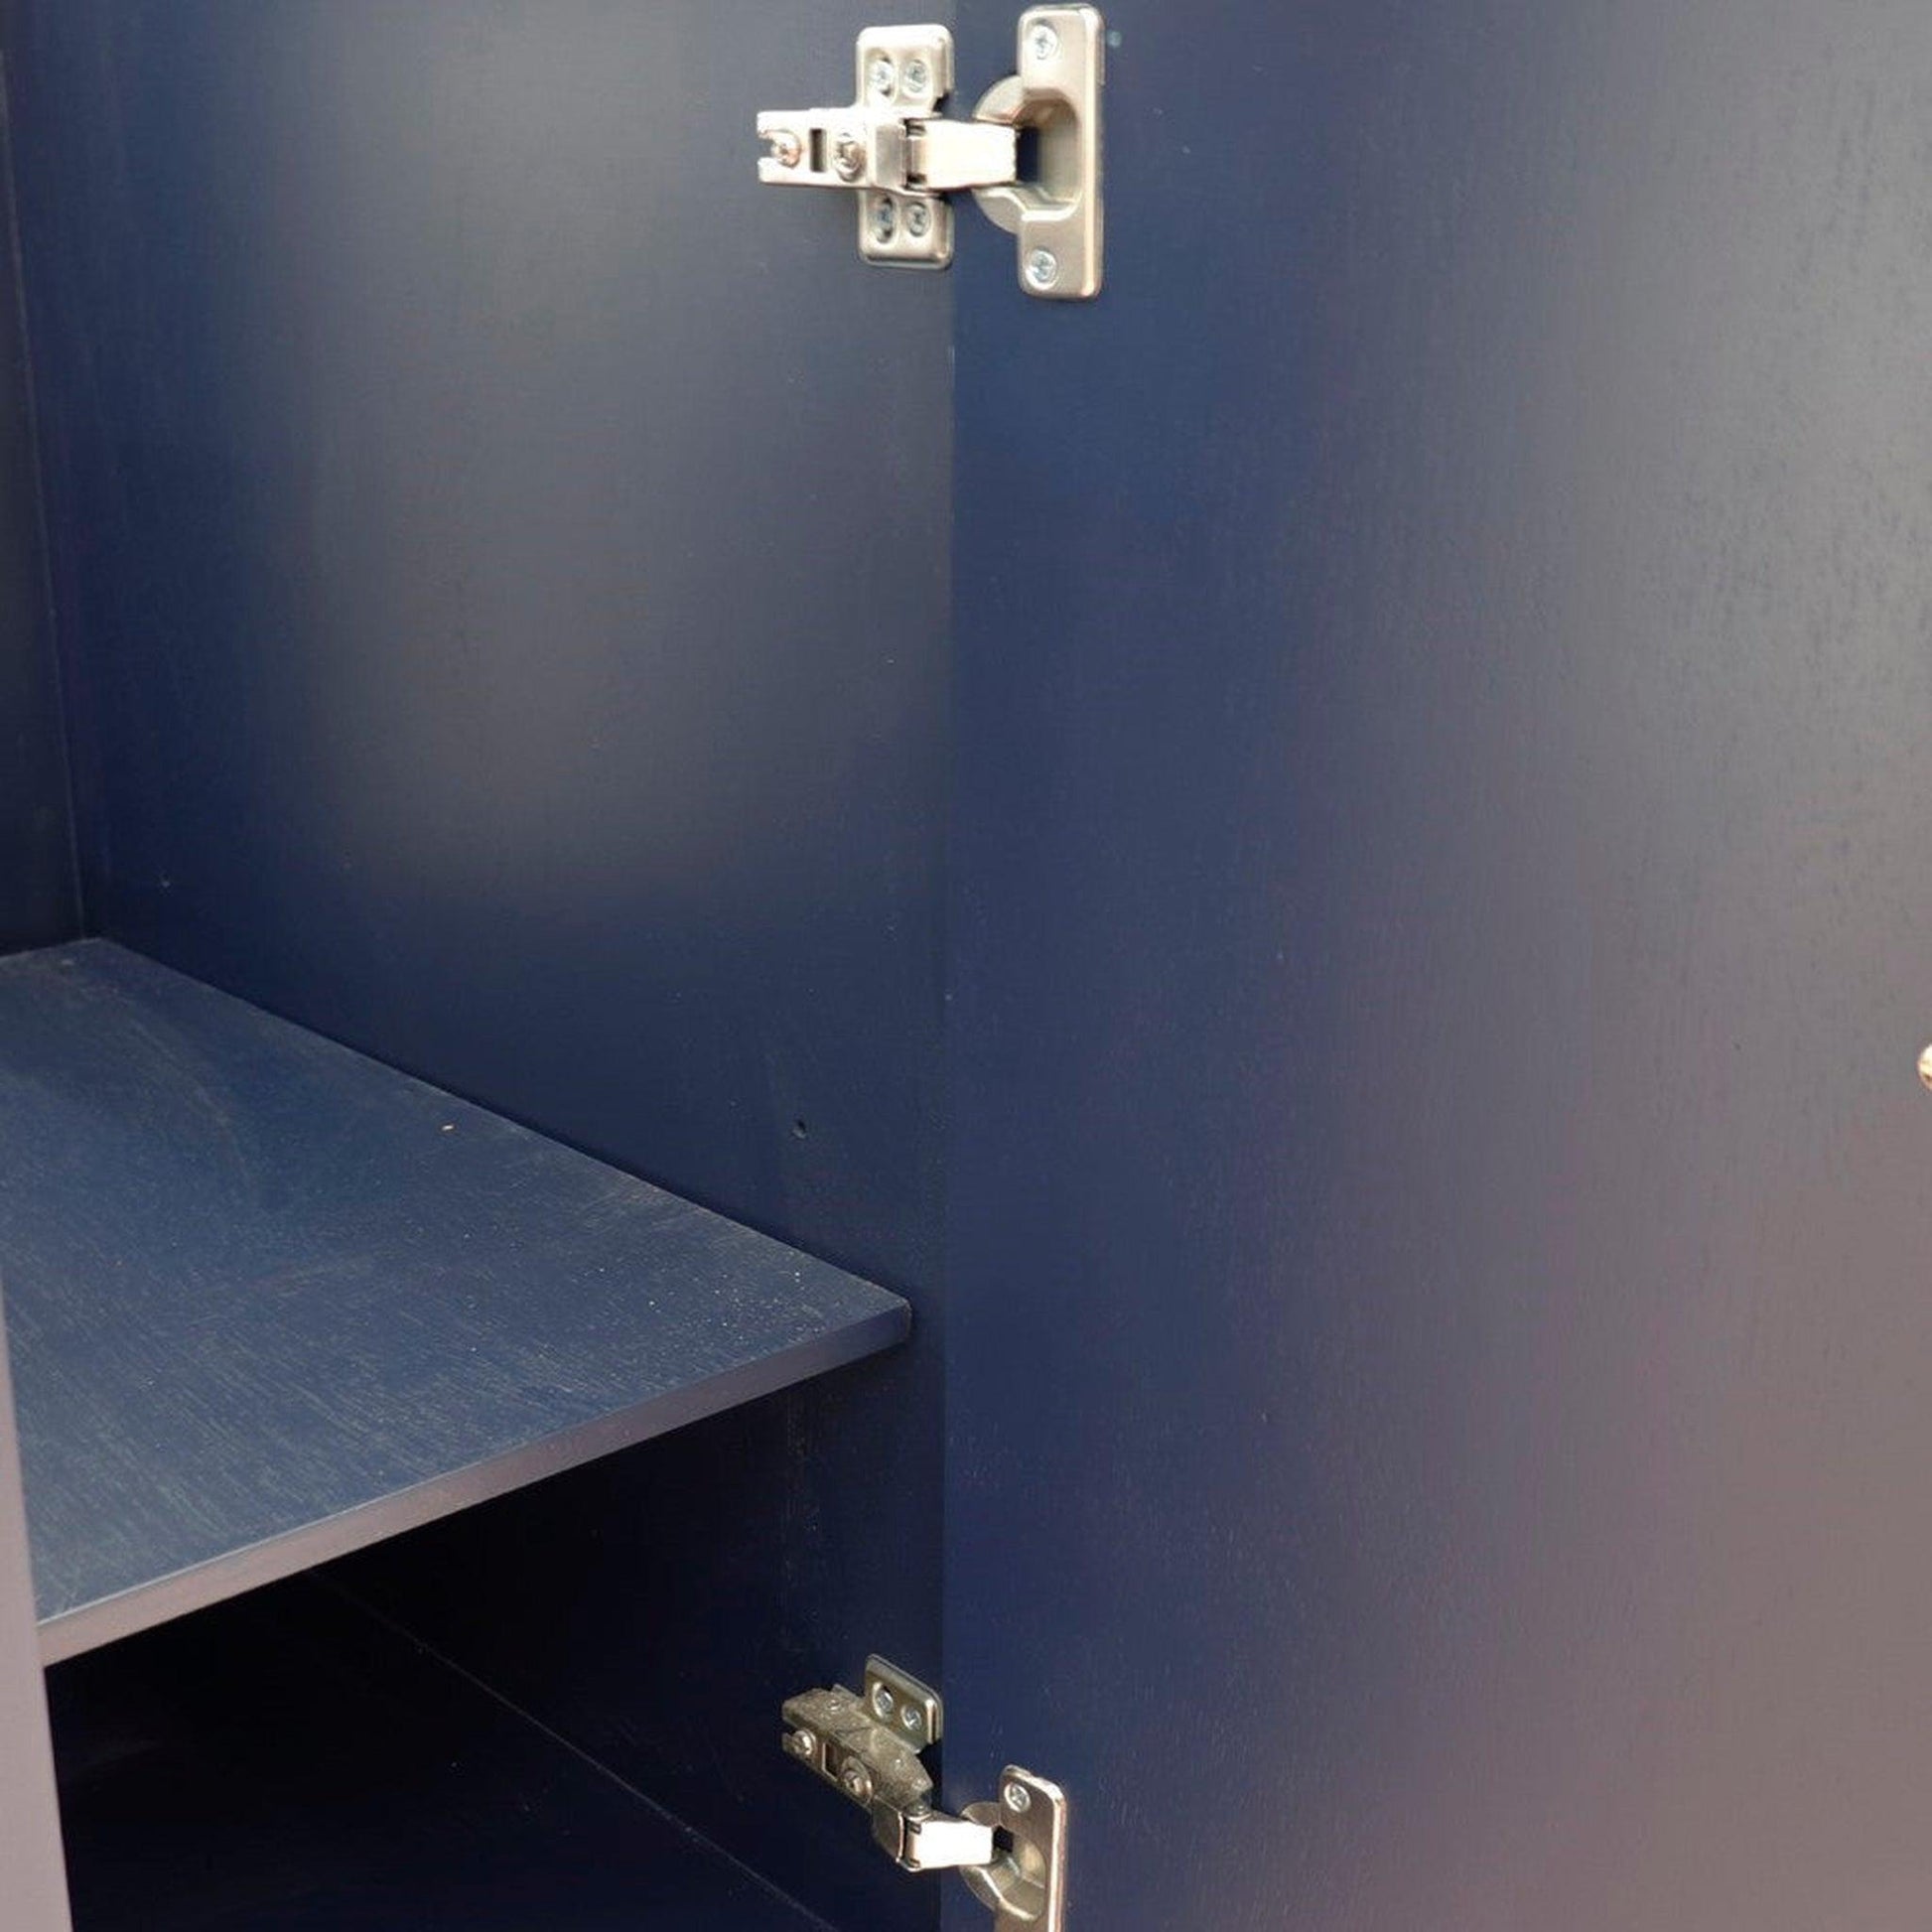 Bellaterra Home Forli 37" 2-Door 3-Drawer Blue Freestanding Vanity Set With Ceramic Left Offset Undermount Rectangular Sink and Gray Granite Top, and Left Door Cabinet